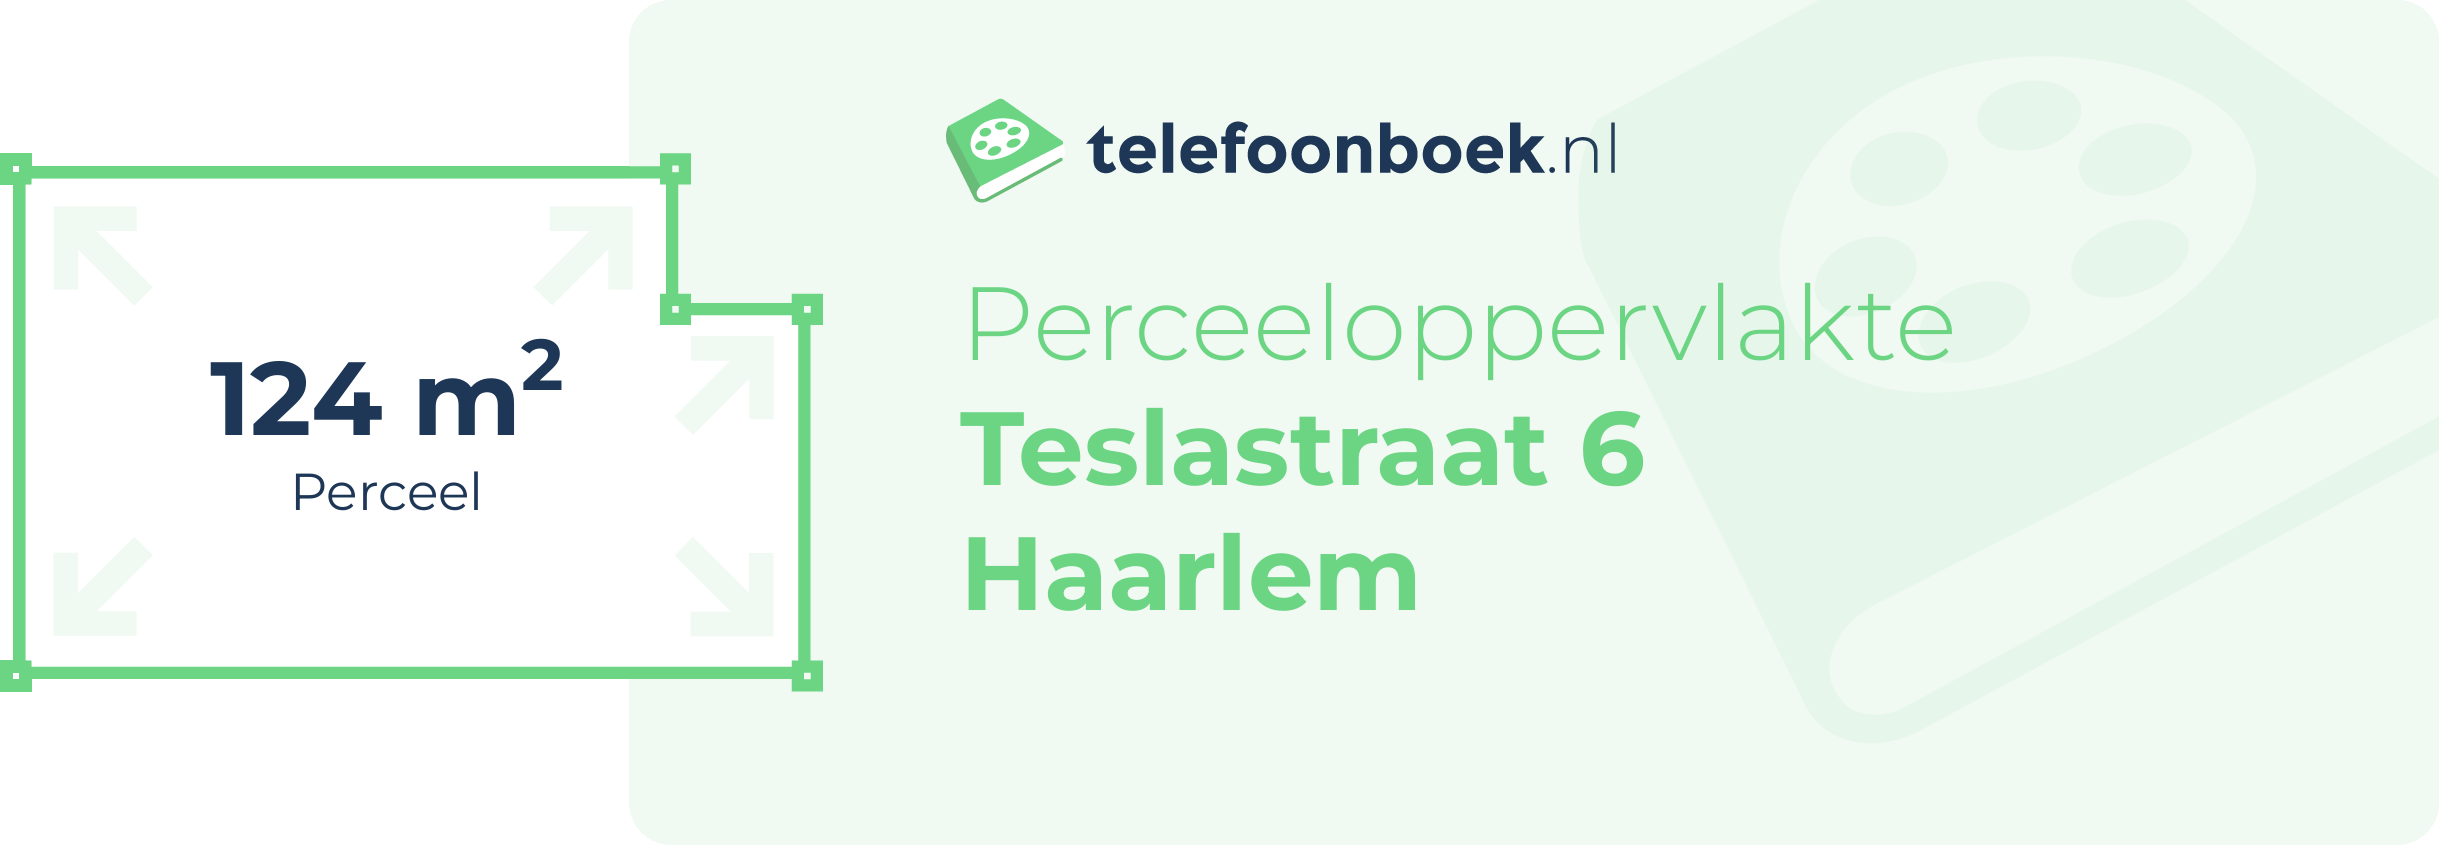 Perceeloppervlakte Teslastraat 6 Haarlem